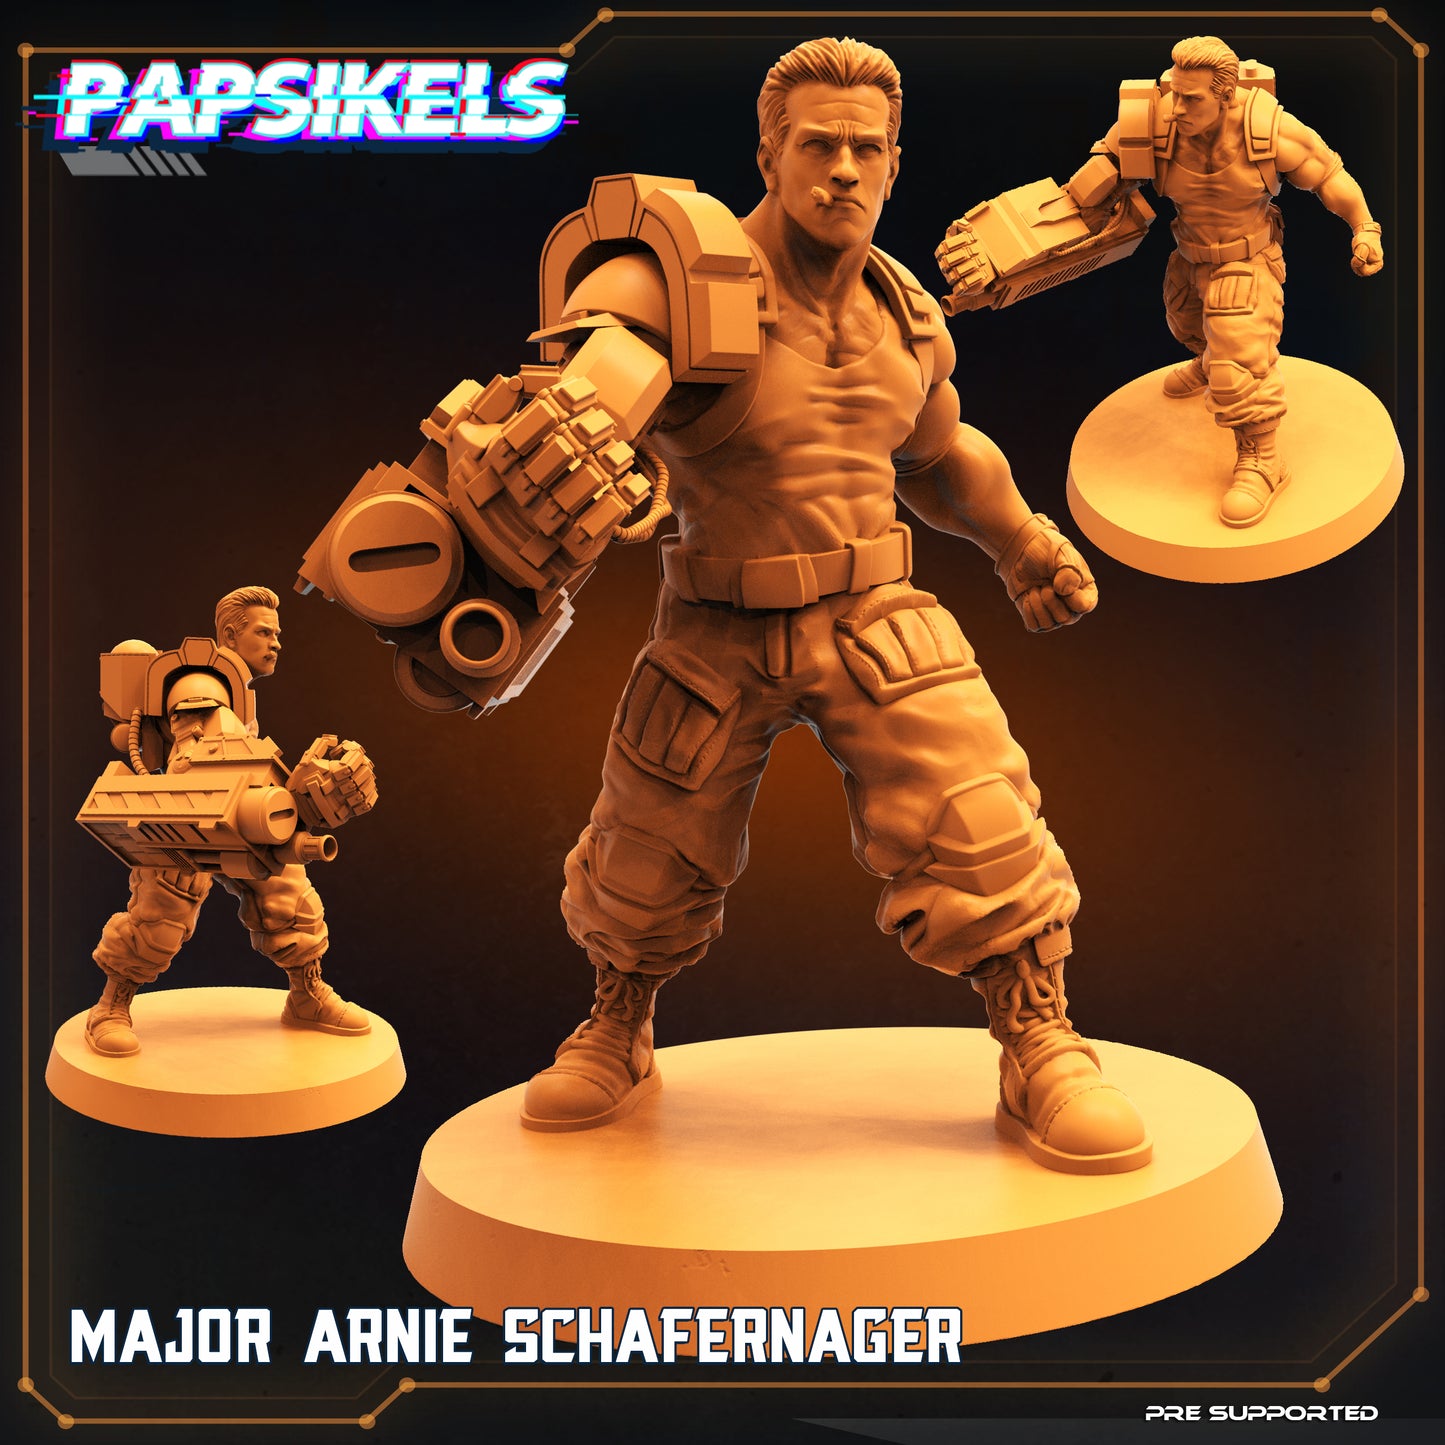 Major Arnie Schafernager